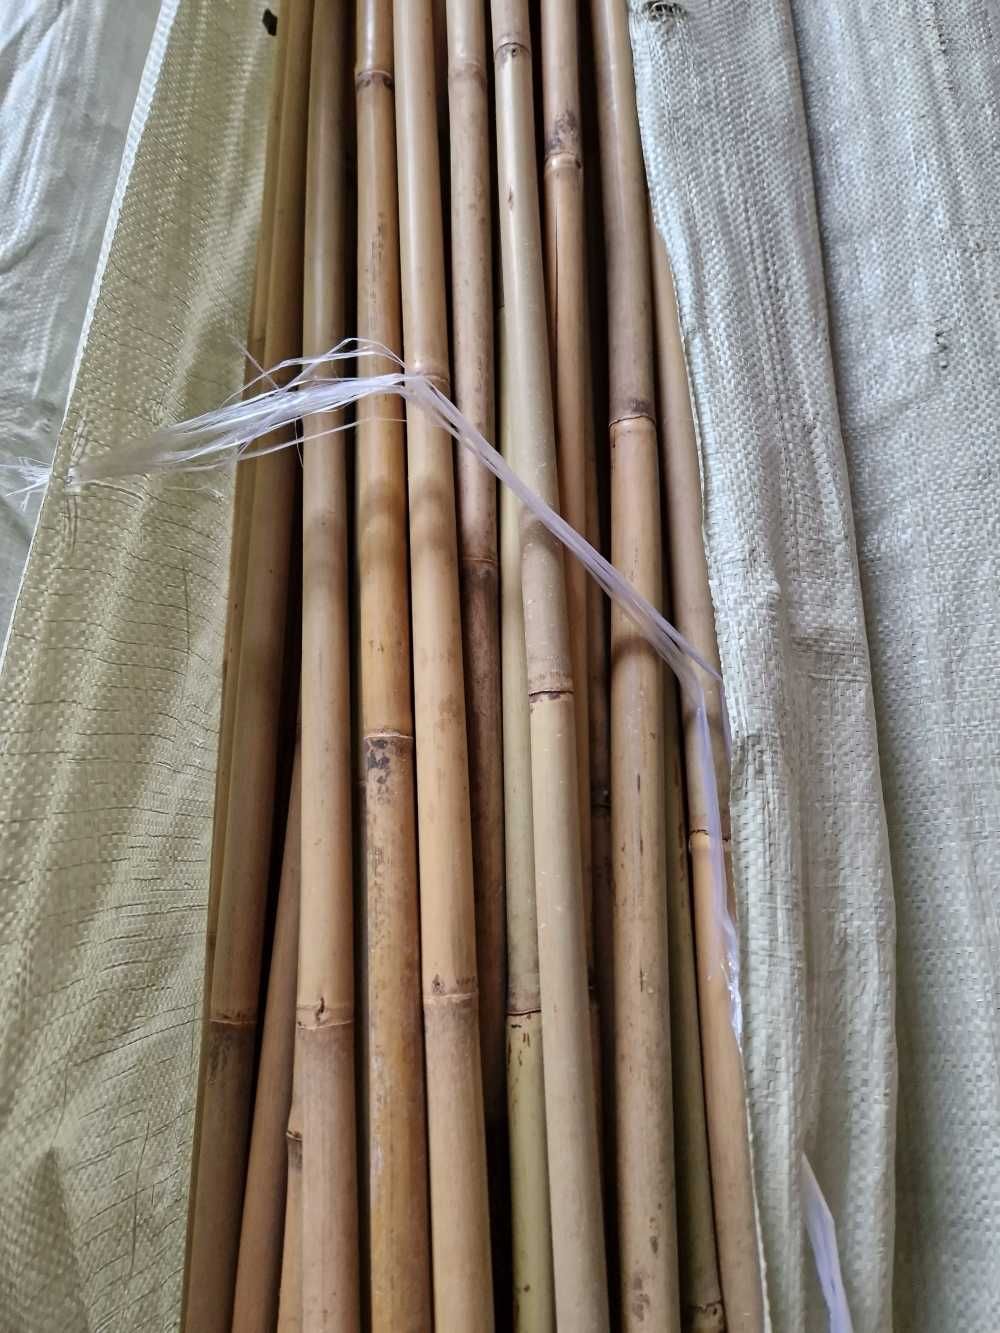 Podpory tyczki do drzewek sadownicze bambus 3m